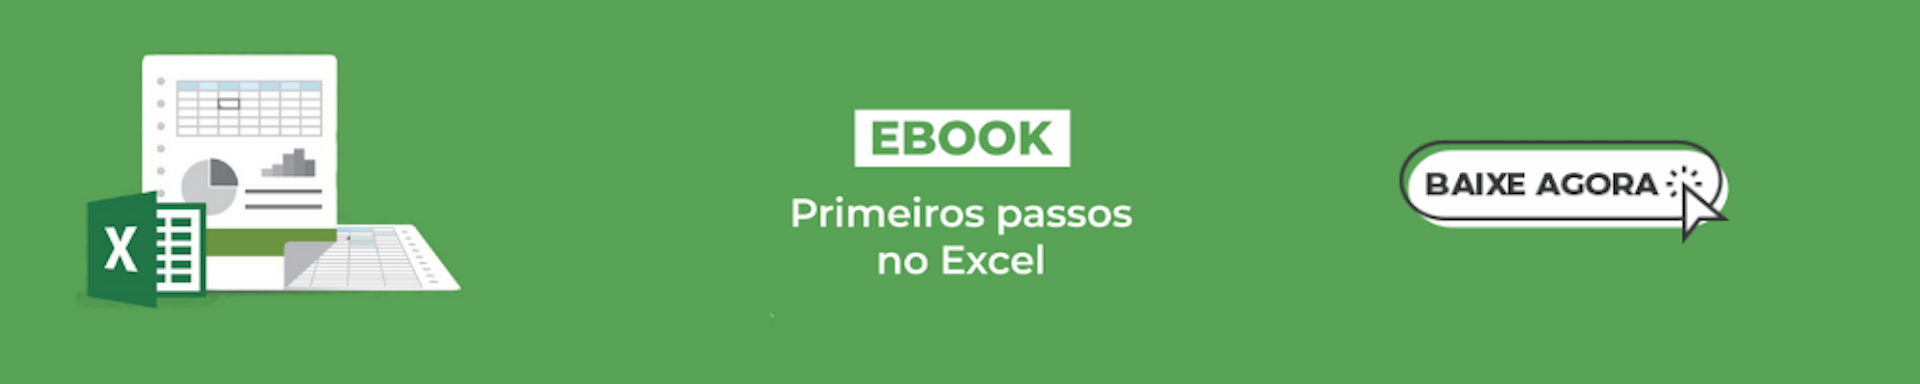 Banner do ebook Primeiros Passos no Excel.